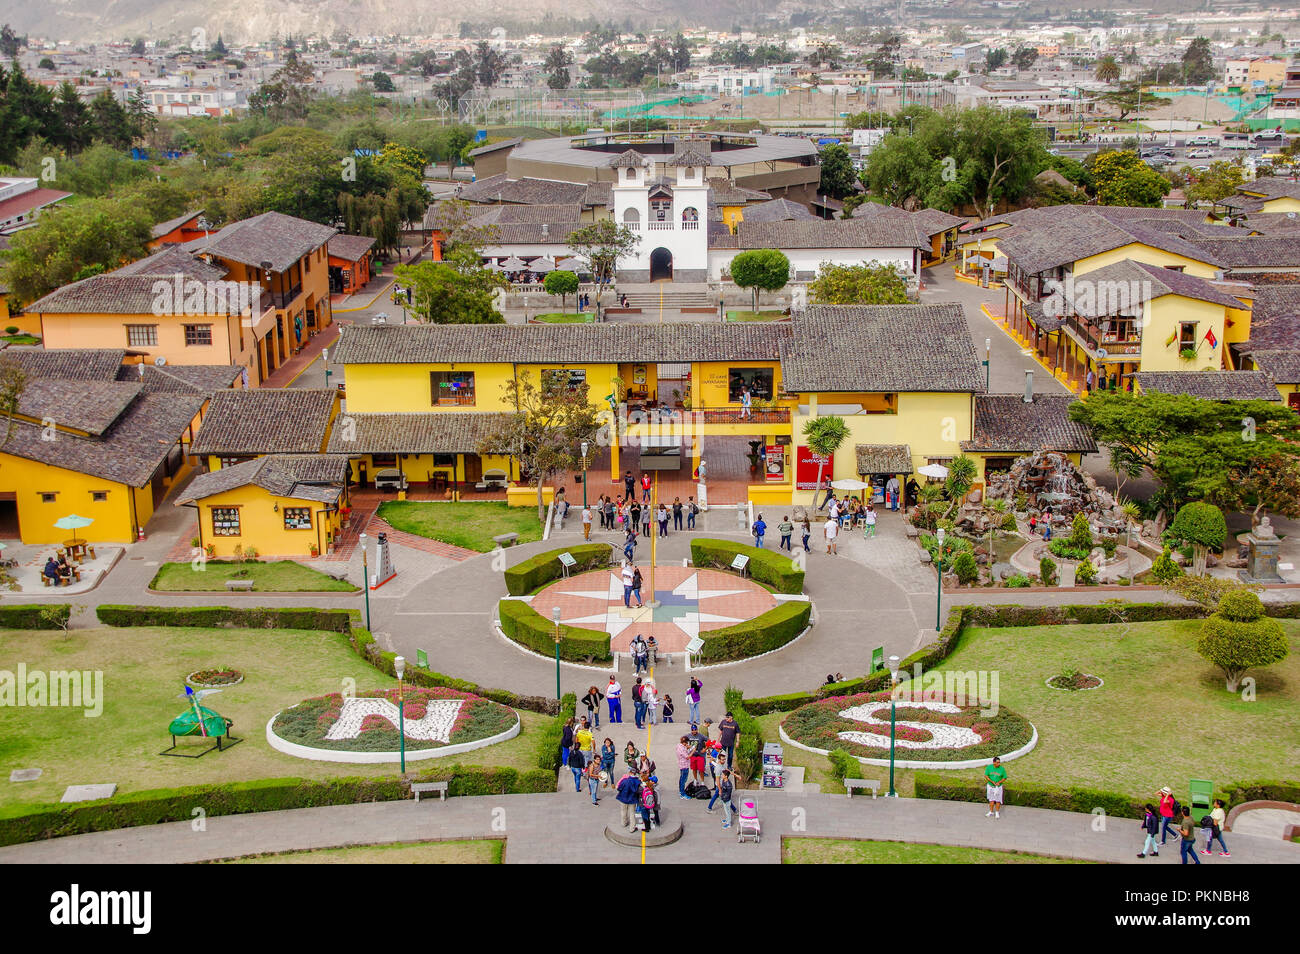 San Antonio de Pichincha, Pichincha, Equateur - Mai 29, 2018 : vue extérieure du bâtiment à l'intérieur de la Ciudad Mitad del Mundo centre touristique près de la ville de Quito Banque D'Images